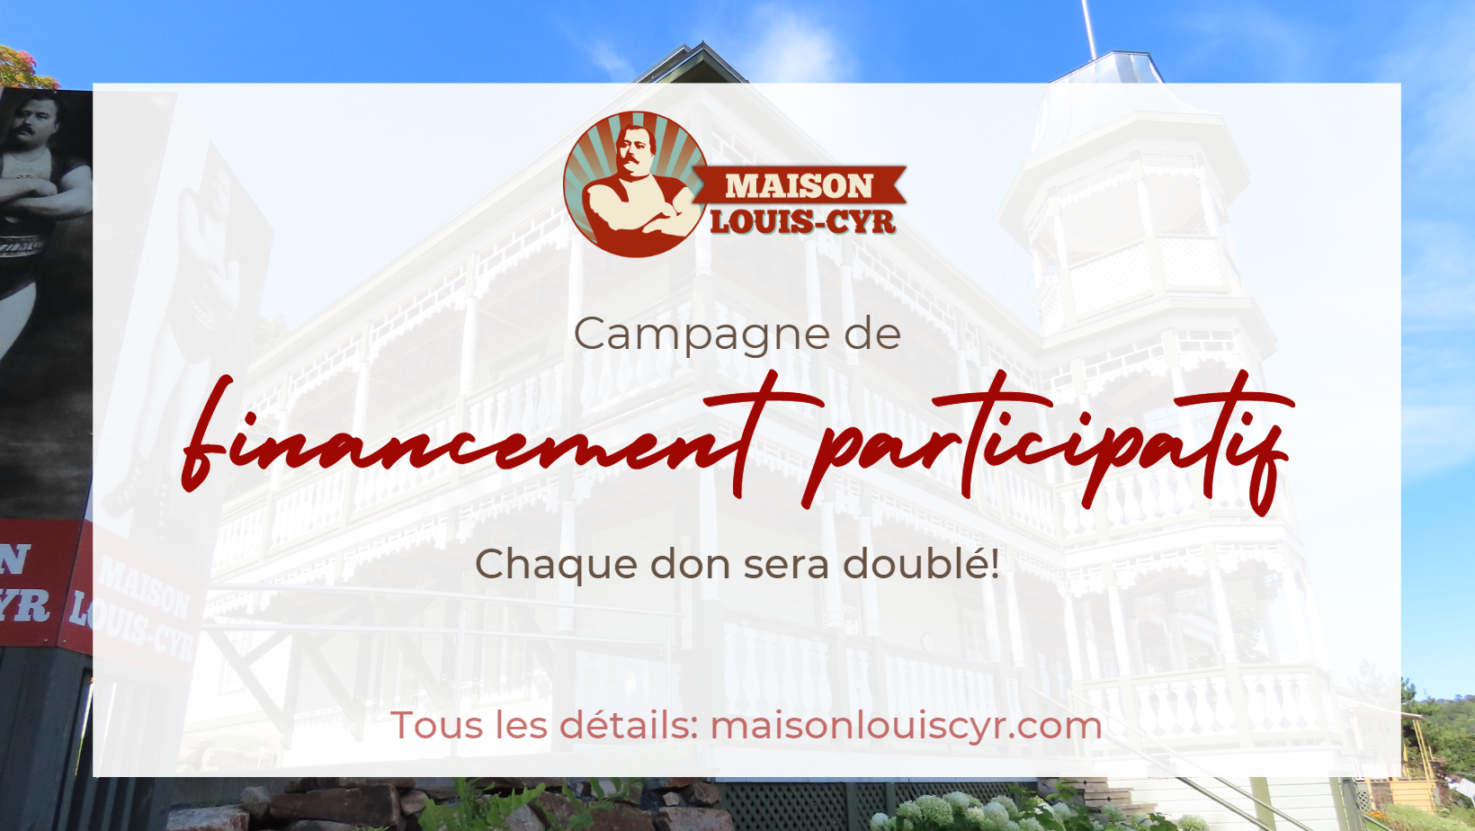 Maison Louis-Cyr/Campagne de financement participatif 2023